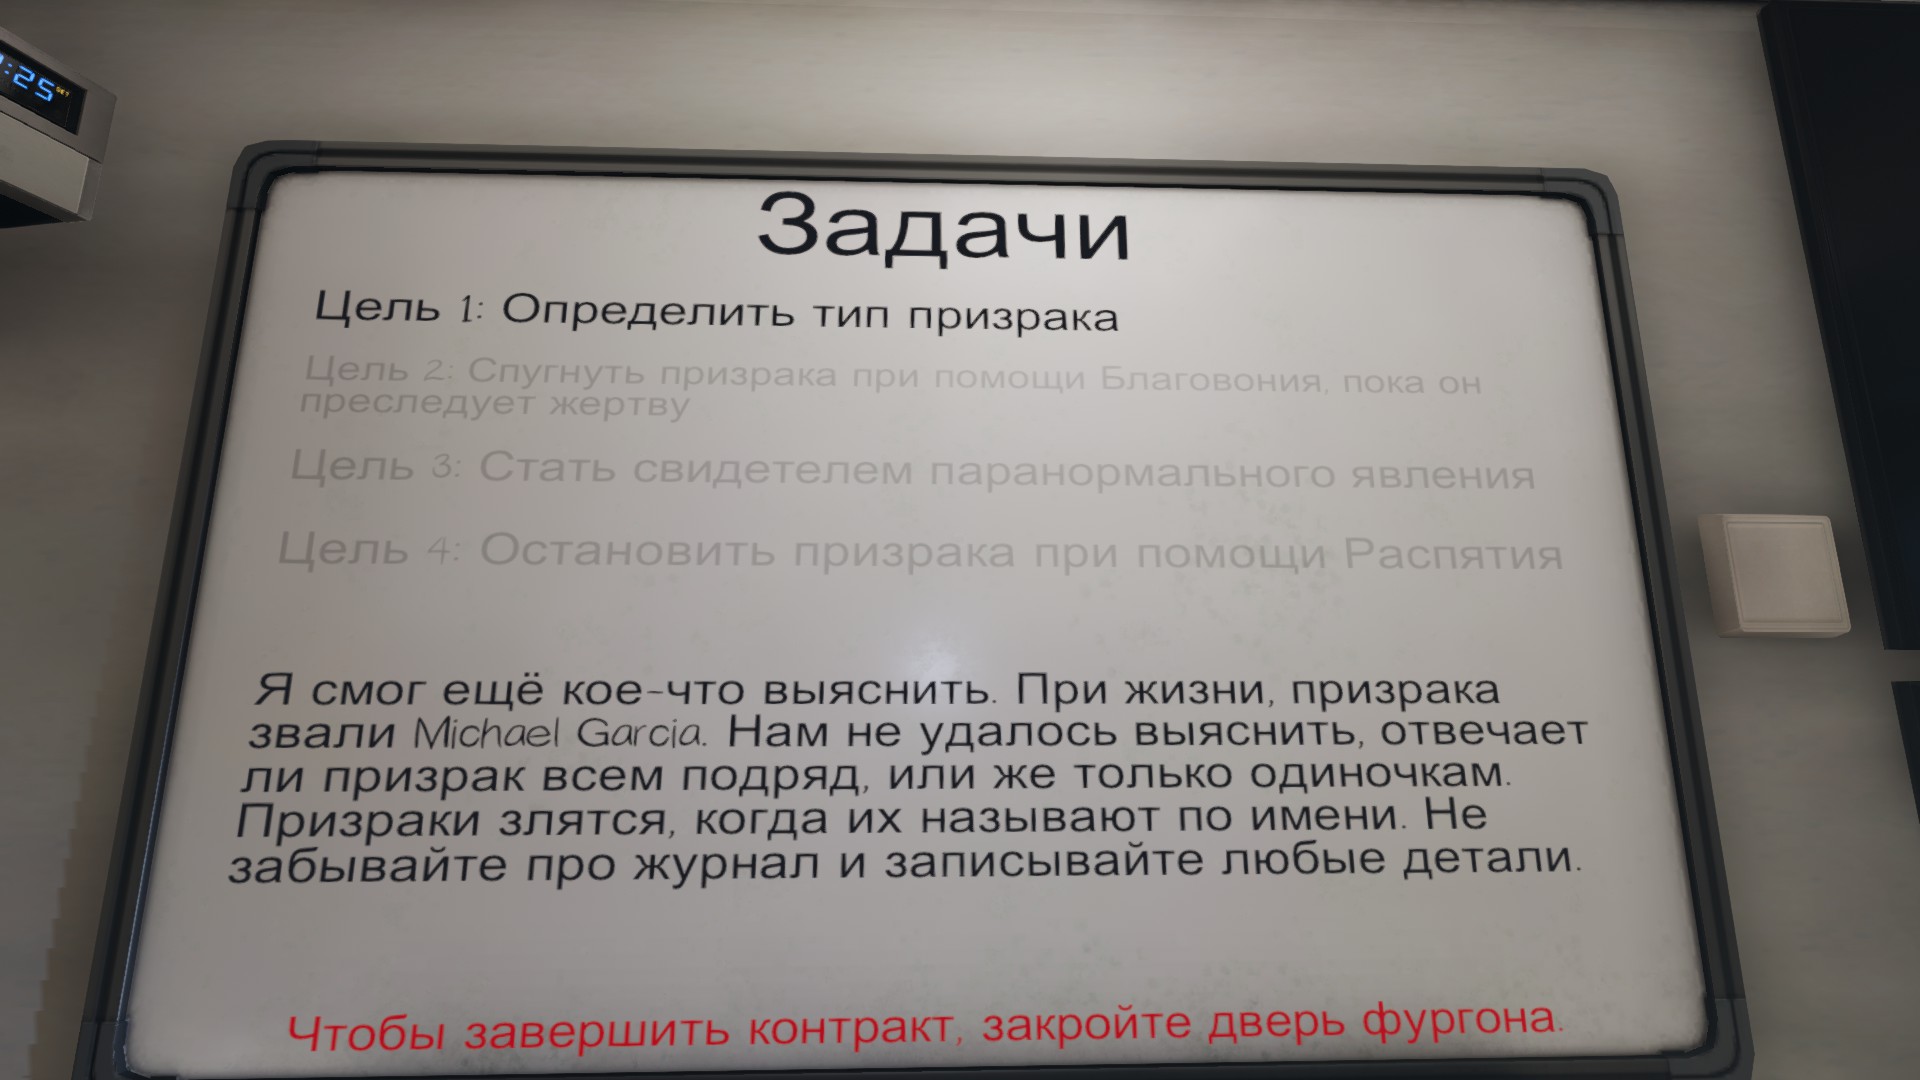 вопросы для доски уиджи phasmophobia на русском фото 84